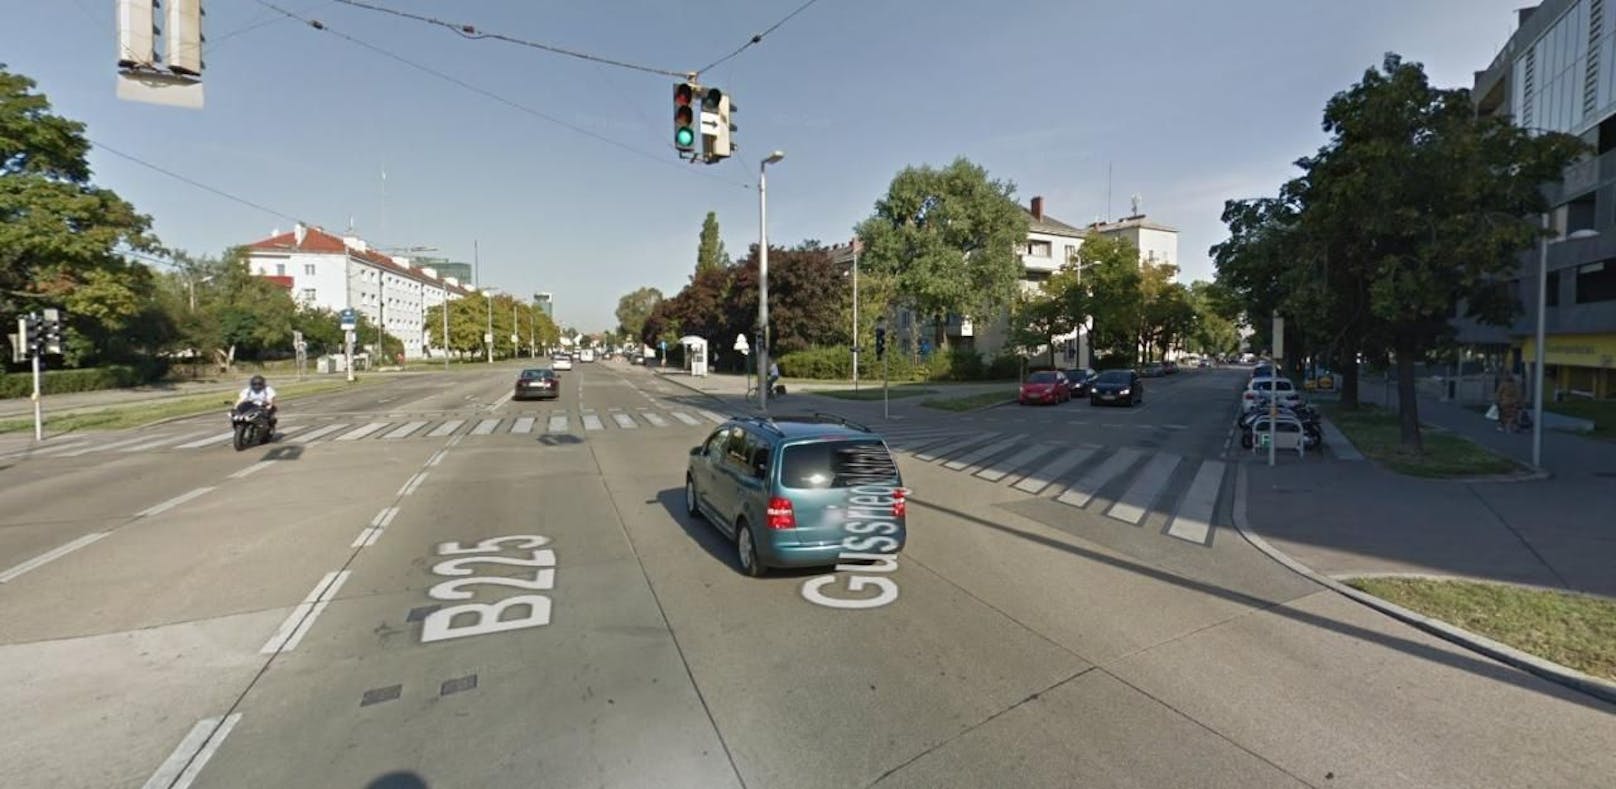 Auf der Kreuzung der Raxstraße mit der Gußriegelstraße in Wien-Favoriten kollidierten zwei Pkws. Dabei wurde eine siebenjährige Insassin verletzt.